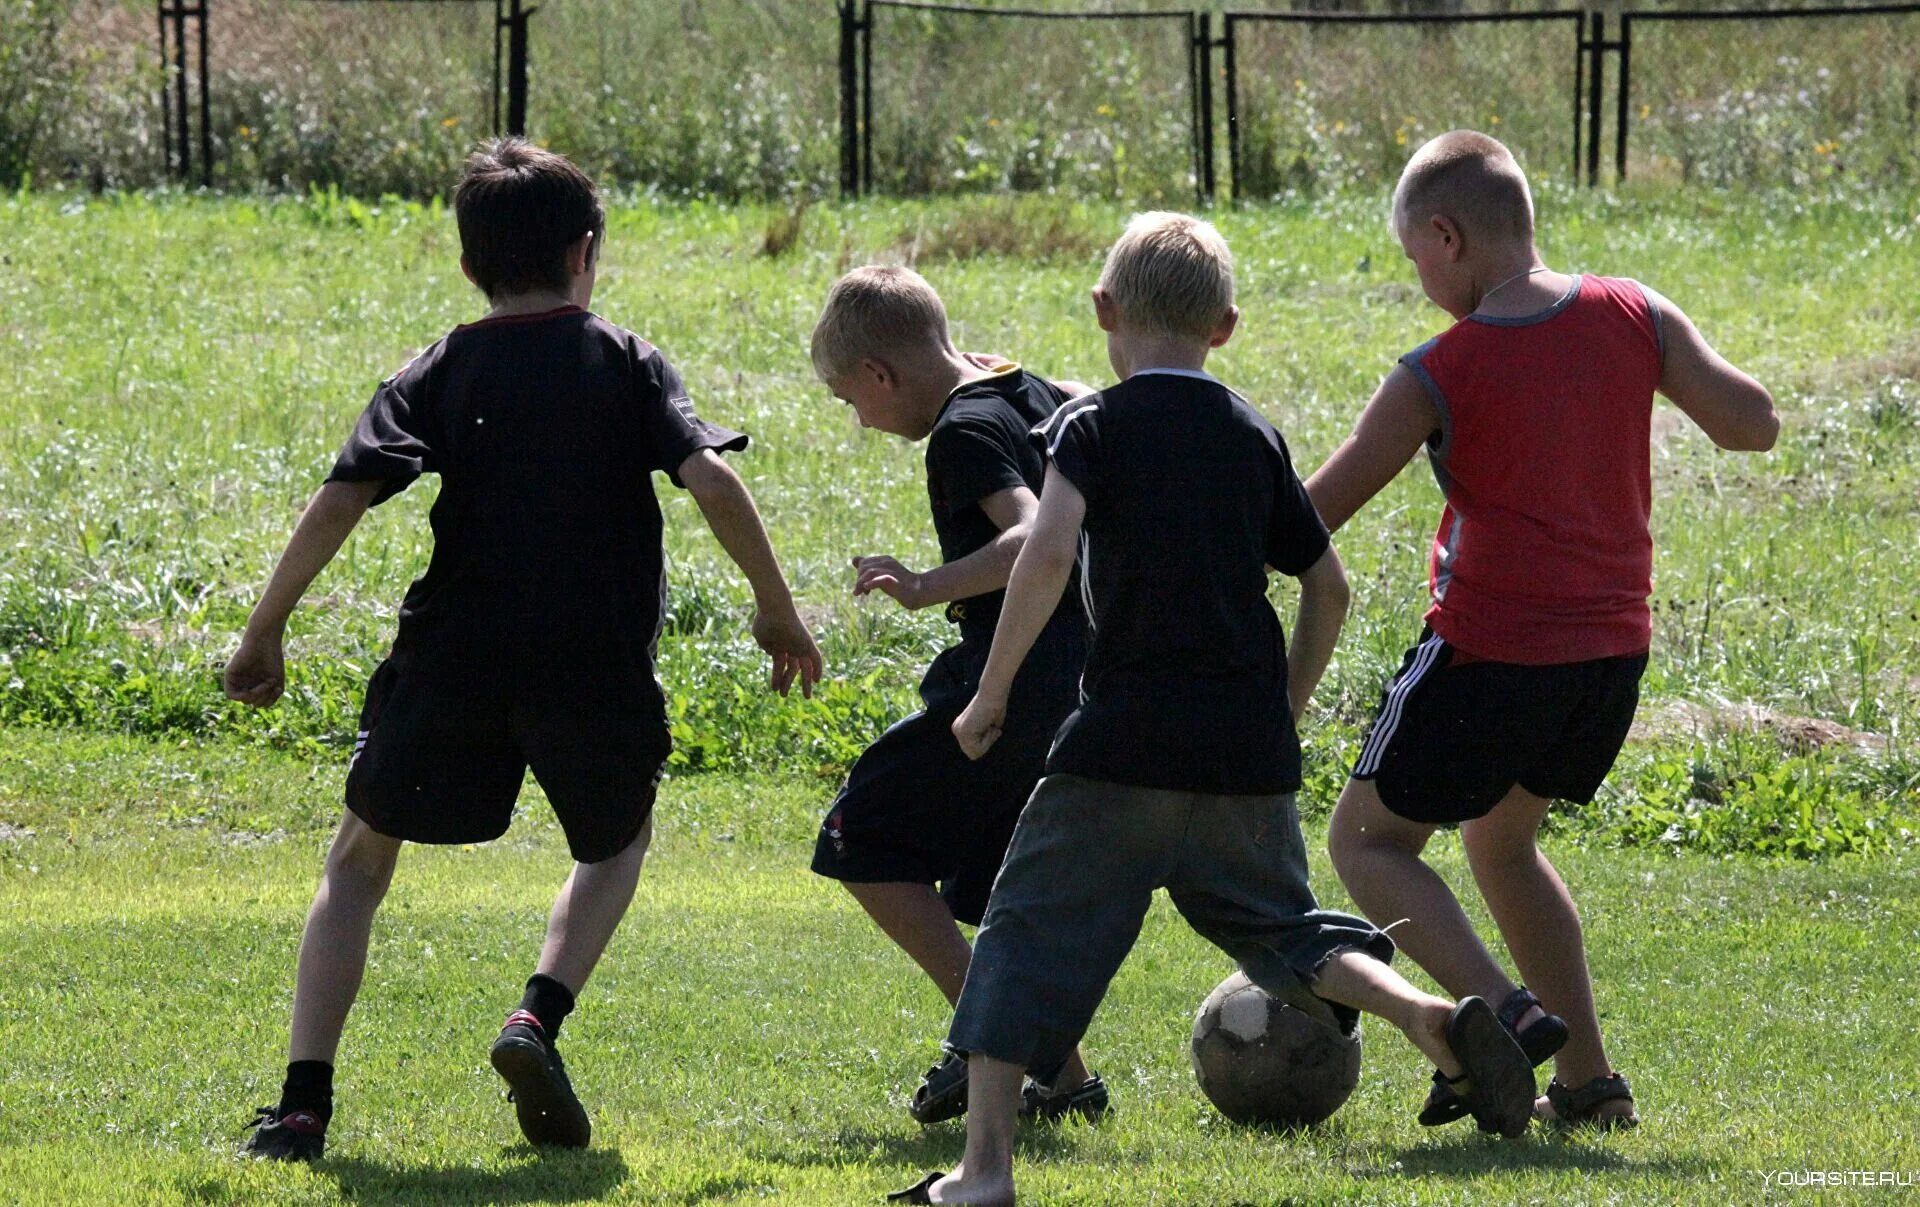 3 мальчика играло или играли. Дети играют в футбол. Дети во дворе. Дети играют в футбол во дворе. Футбол во дворе.